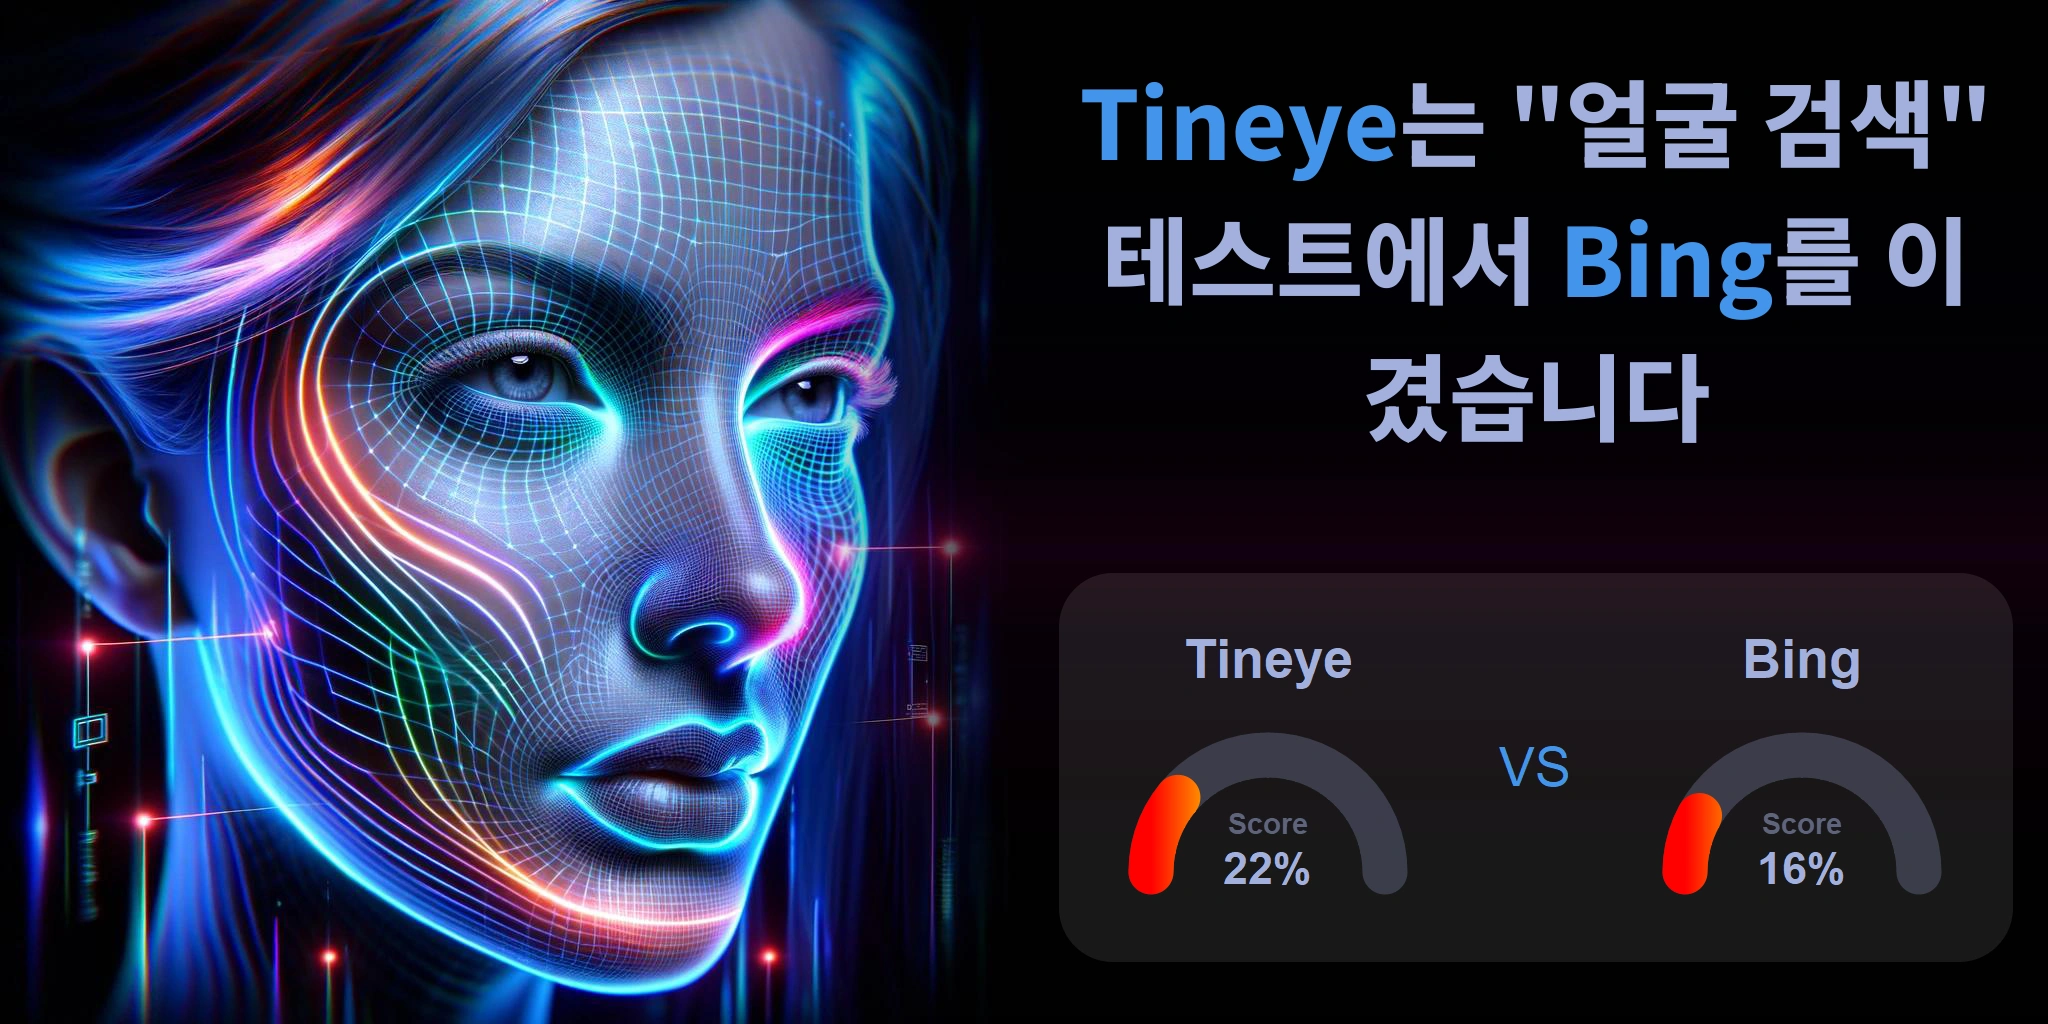 Tineye.com vs Bing.com